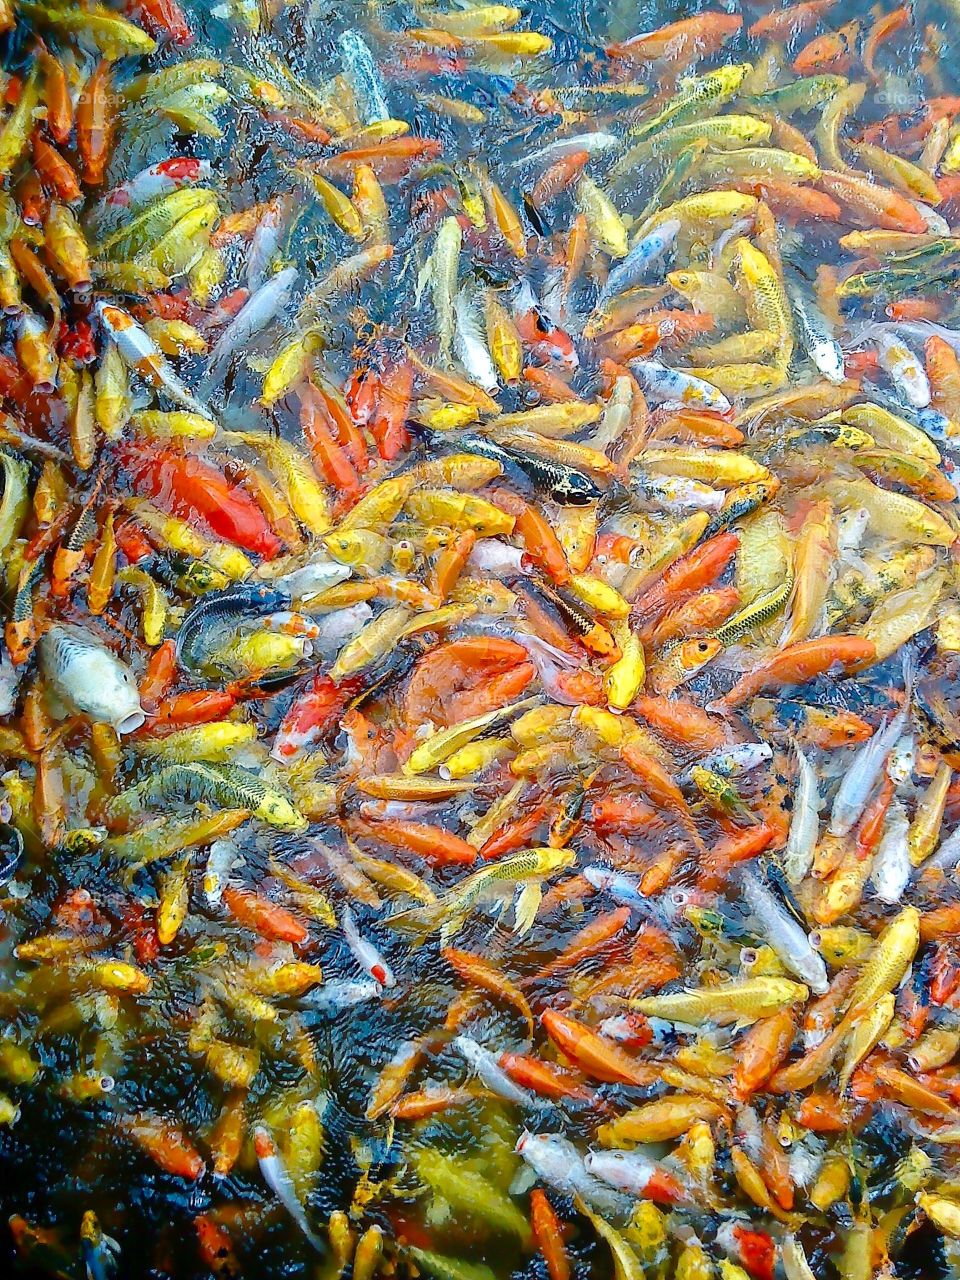 School of fish in water